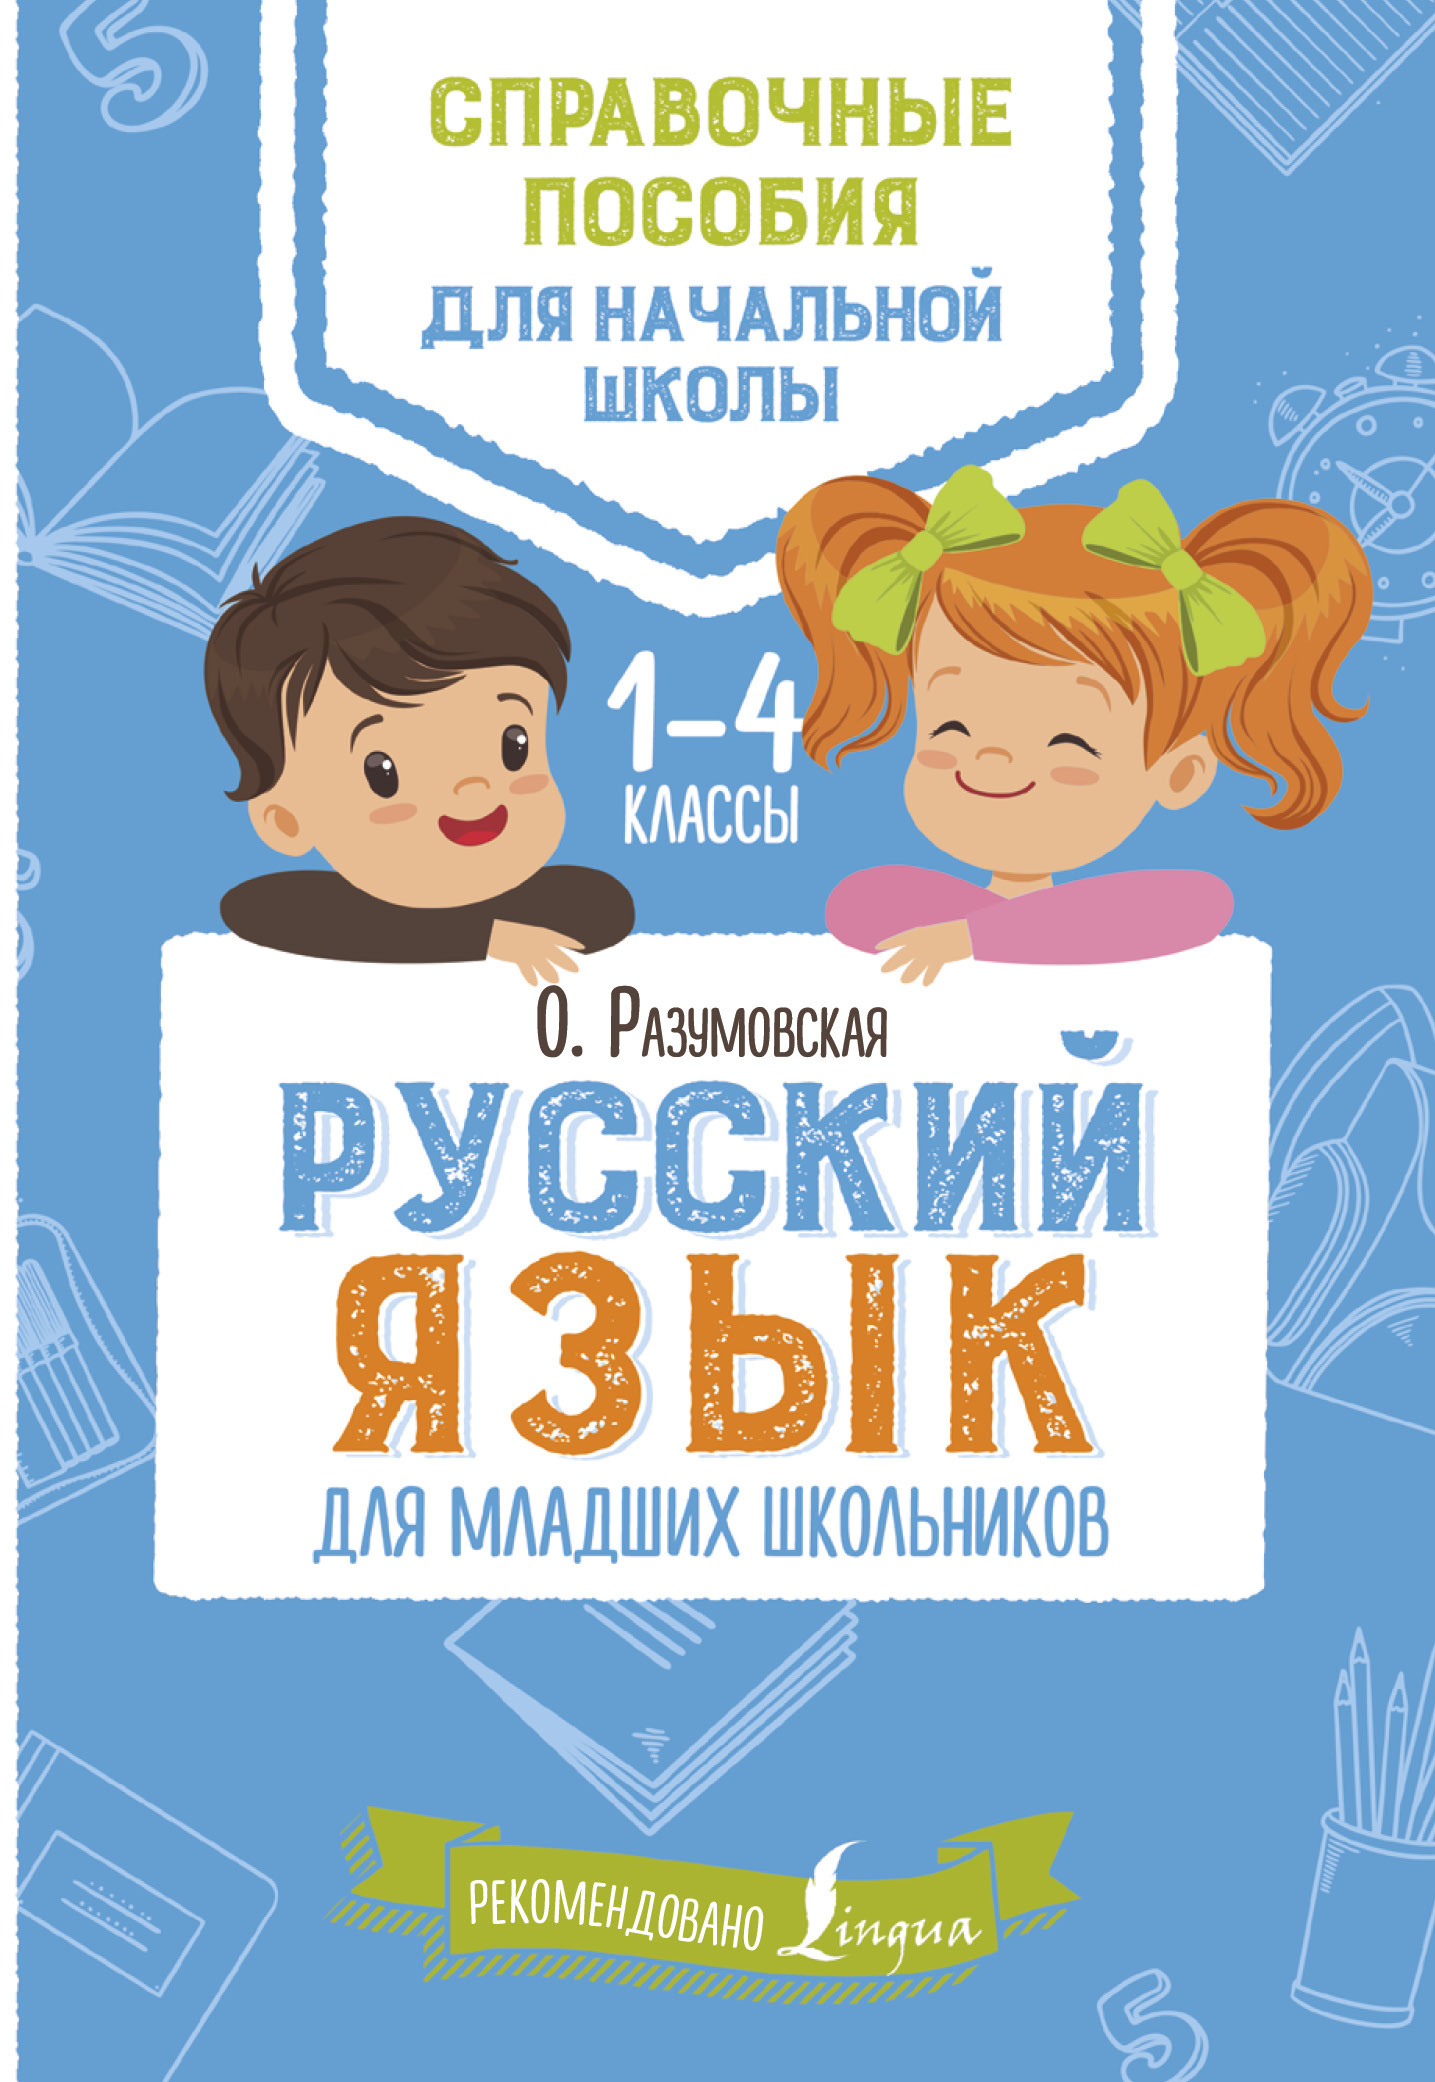 Скачать Русский язык для младших школьников. 1-4 классы быстро